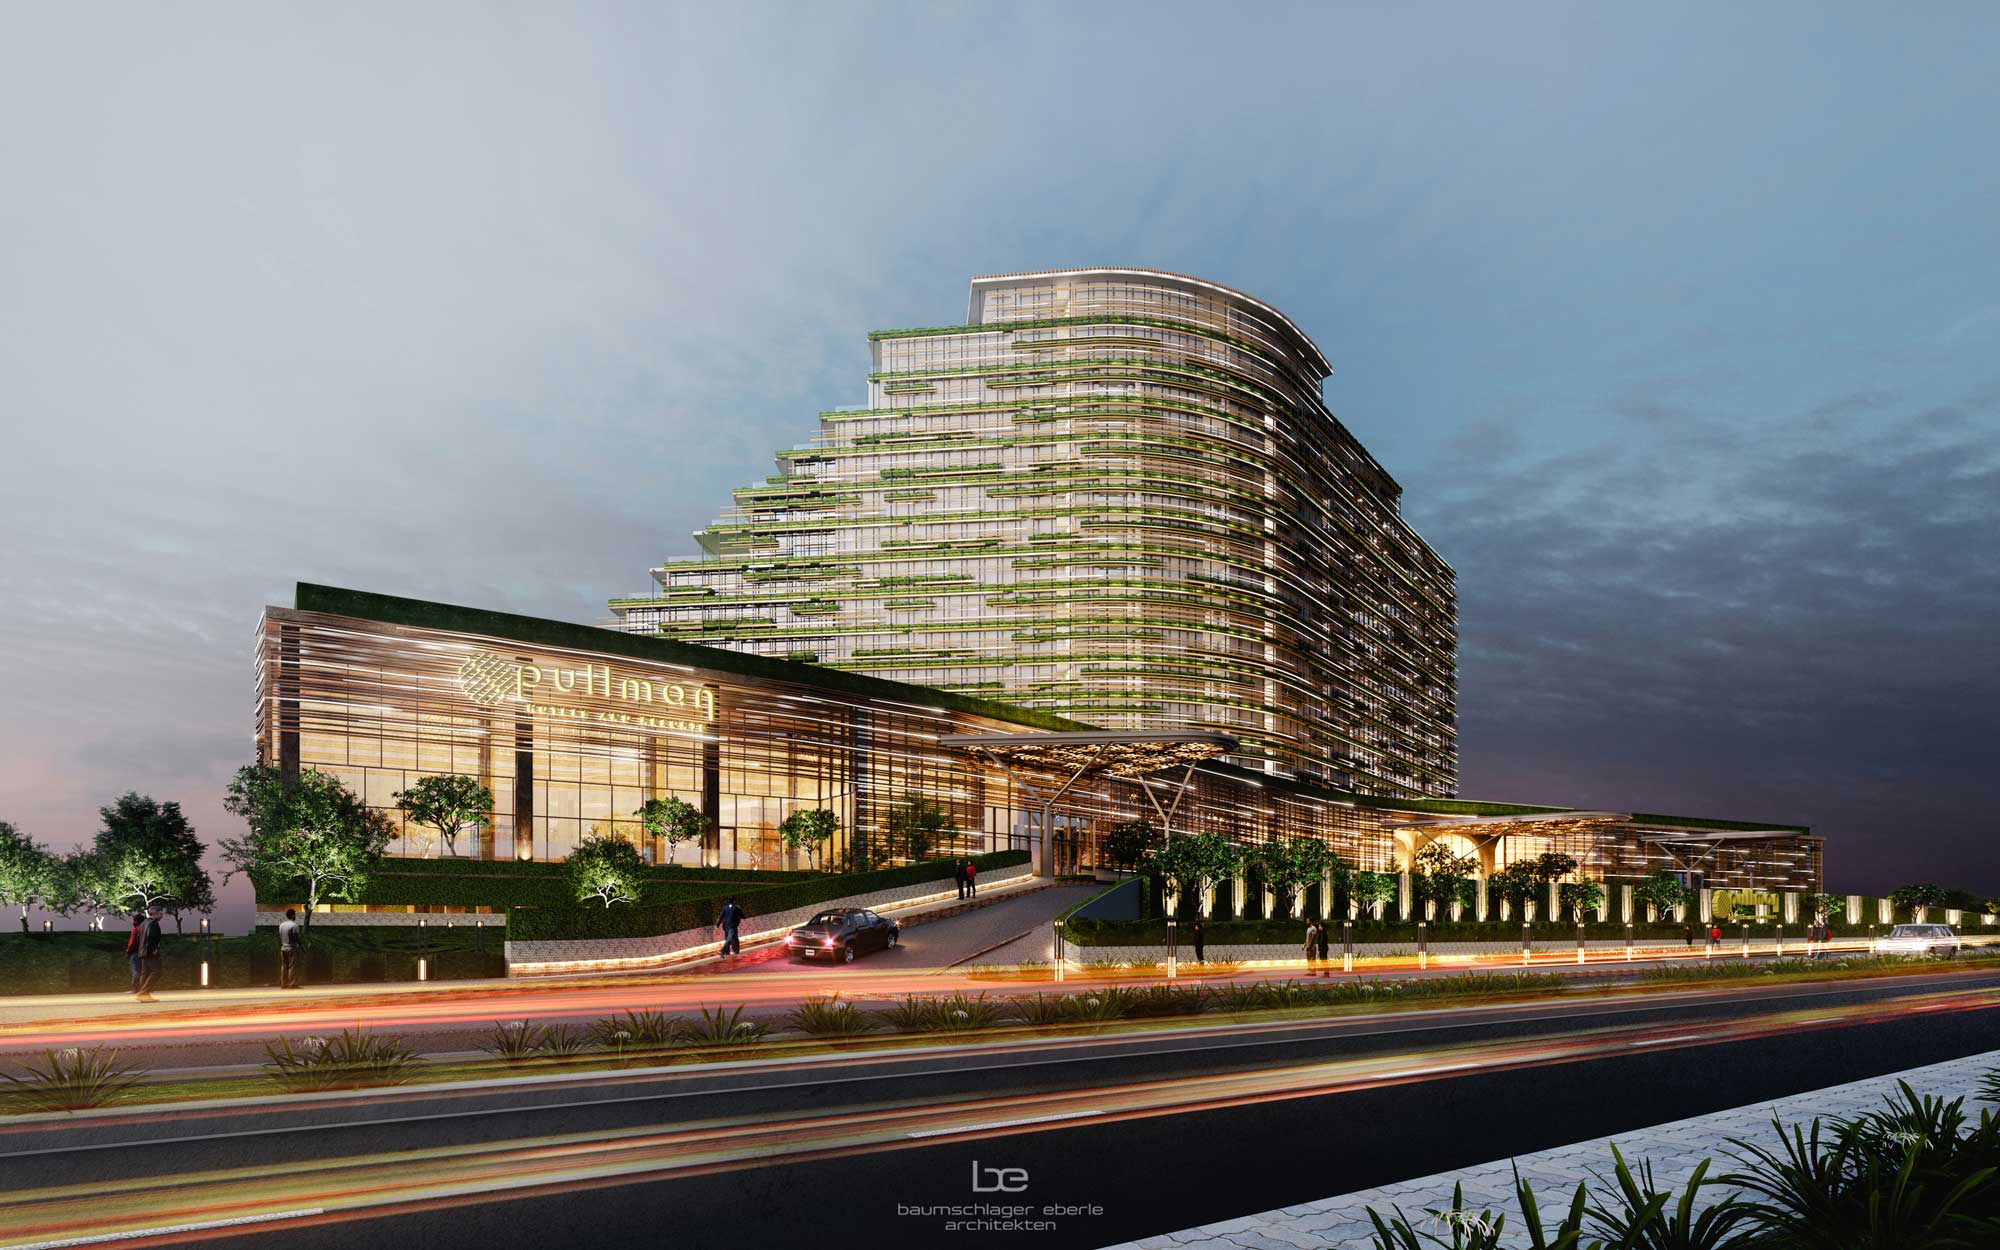 Dự án Khách sạn và Resort Pullman Quảng Bình